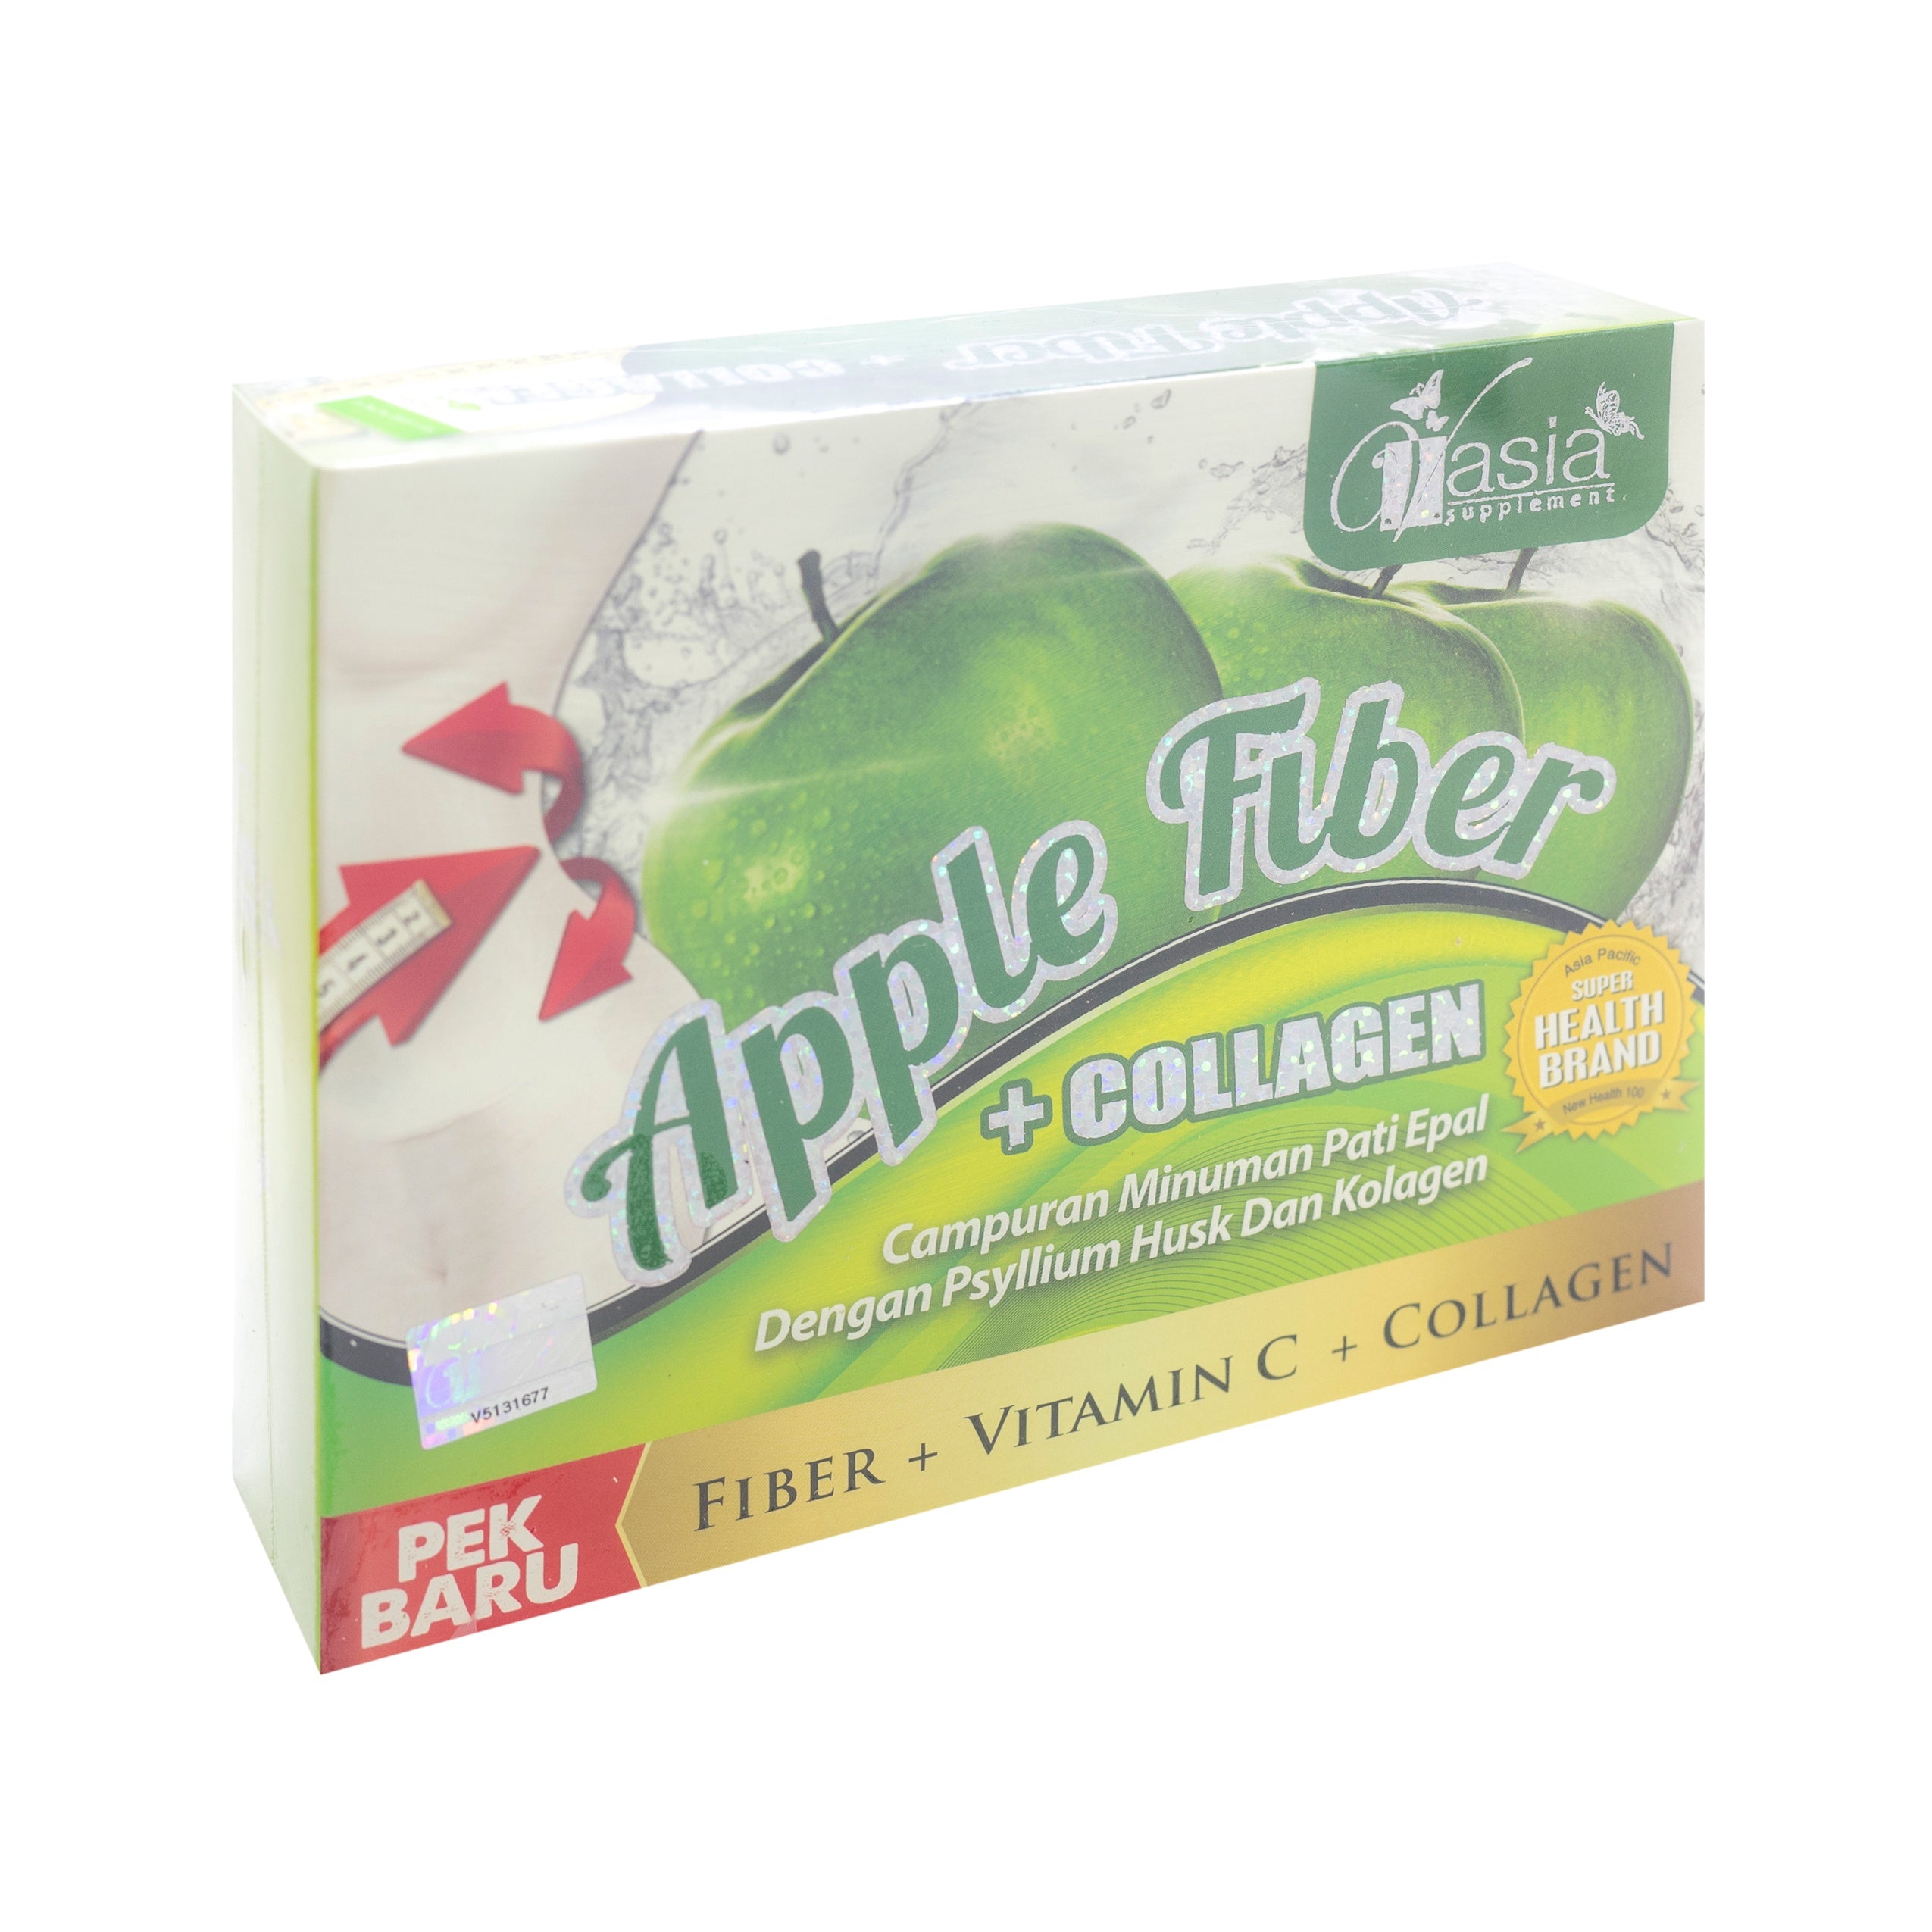 V'Asia, Apple Fiber + Collagen, 10 sachets X 15 gm